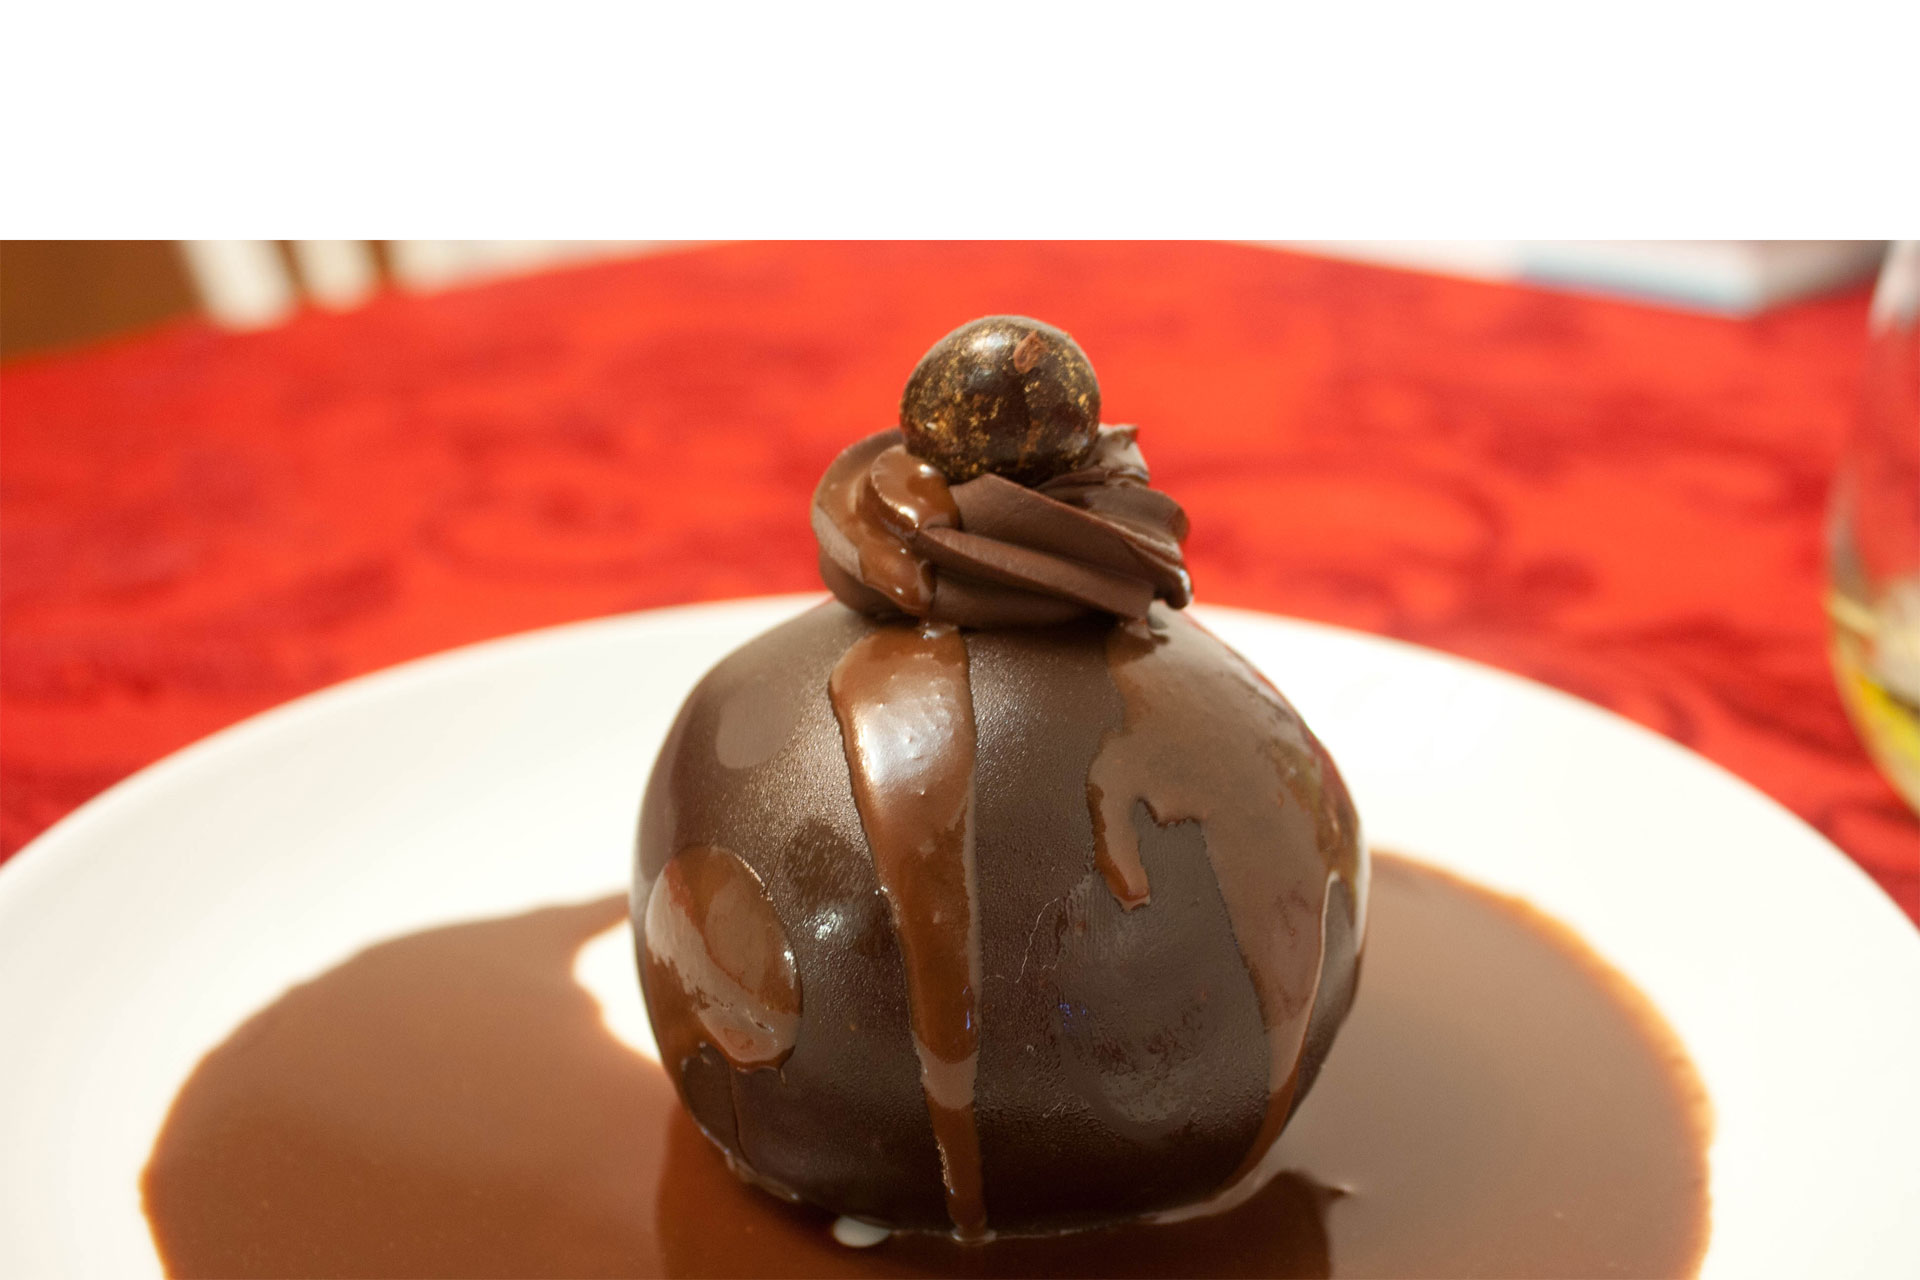 Si eres de los que aman los postres y además te encanta el chocolate, aprende a hacer este dulce y sorprende a alguien en San Valentín